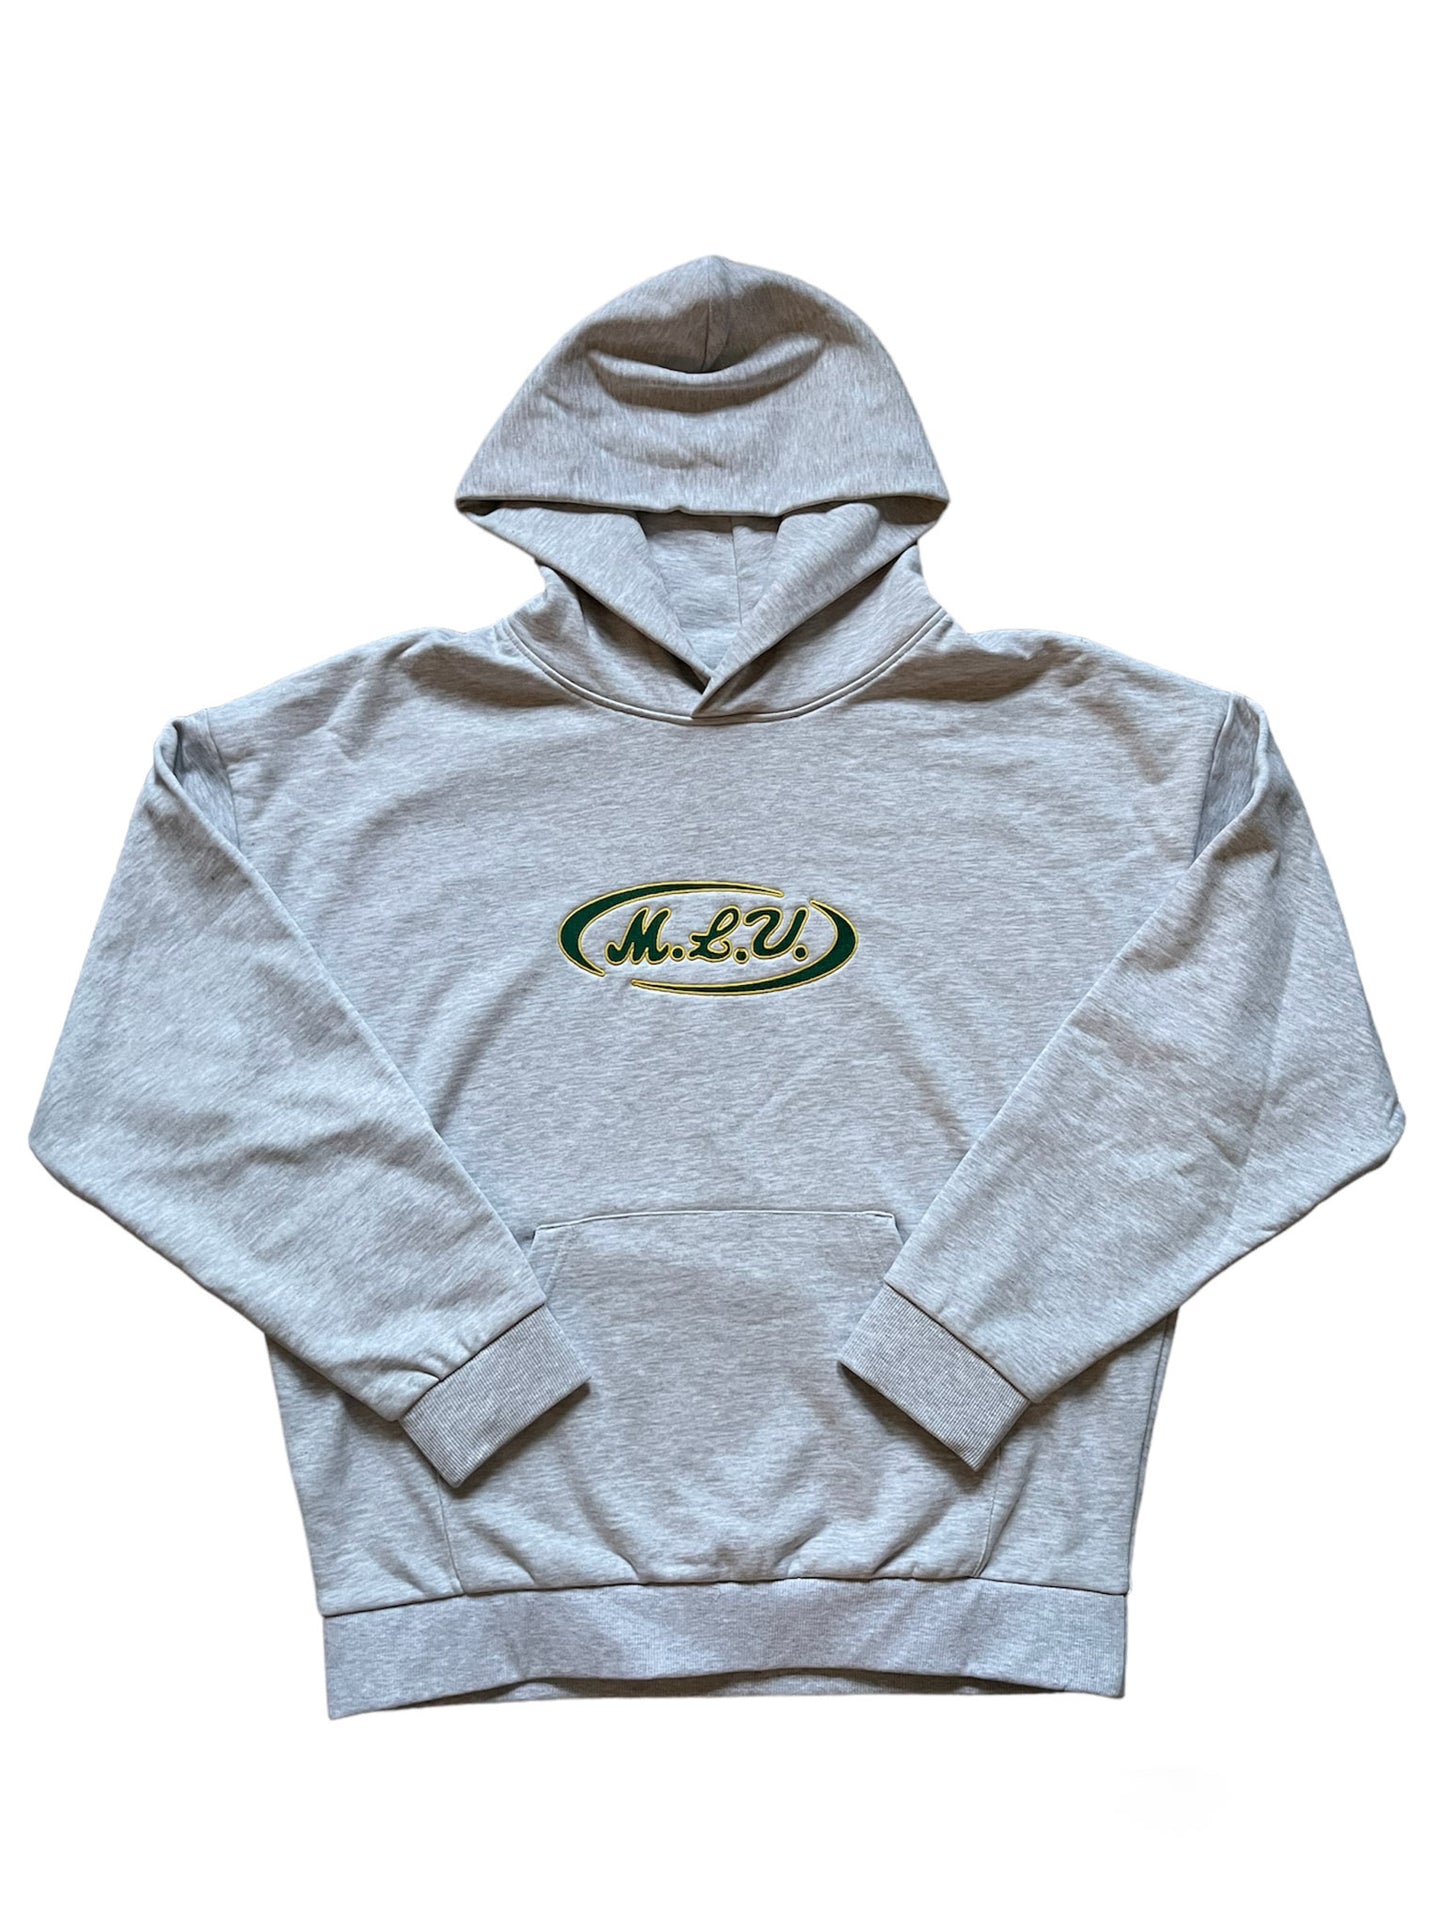 Athletic hoodie gray